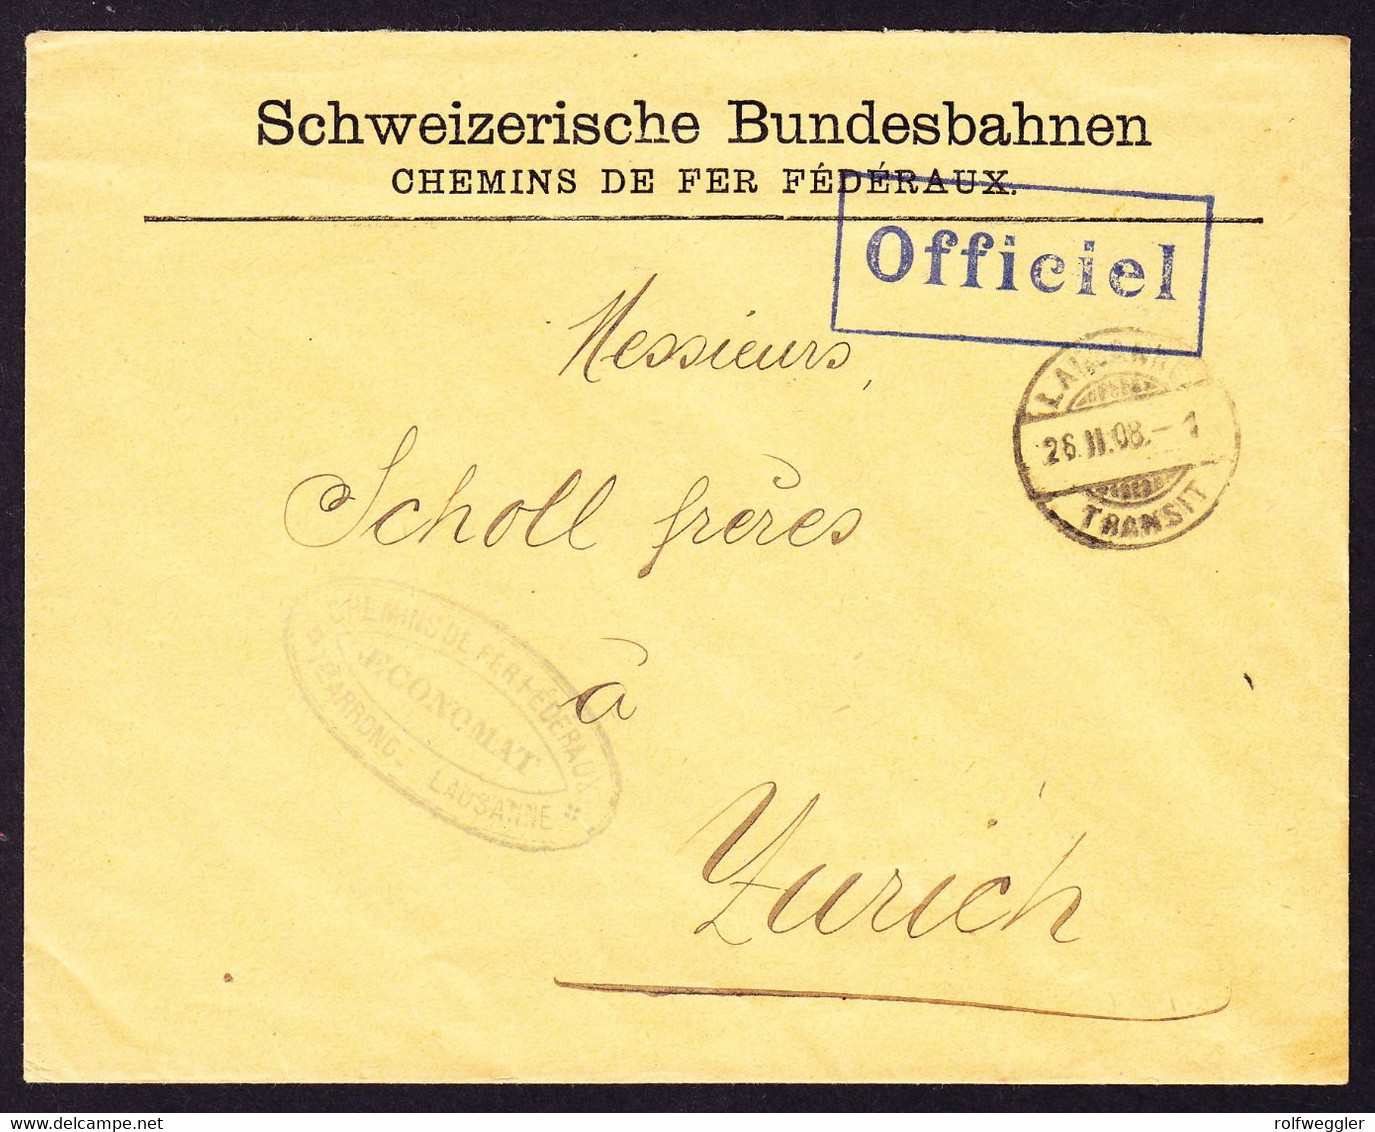 1908 Offizieller Brief Schweizerische Bundesbahnen. Aus Lausanne Nach Zürich. Blauer Stempel "Officiel" - Ferrovie